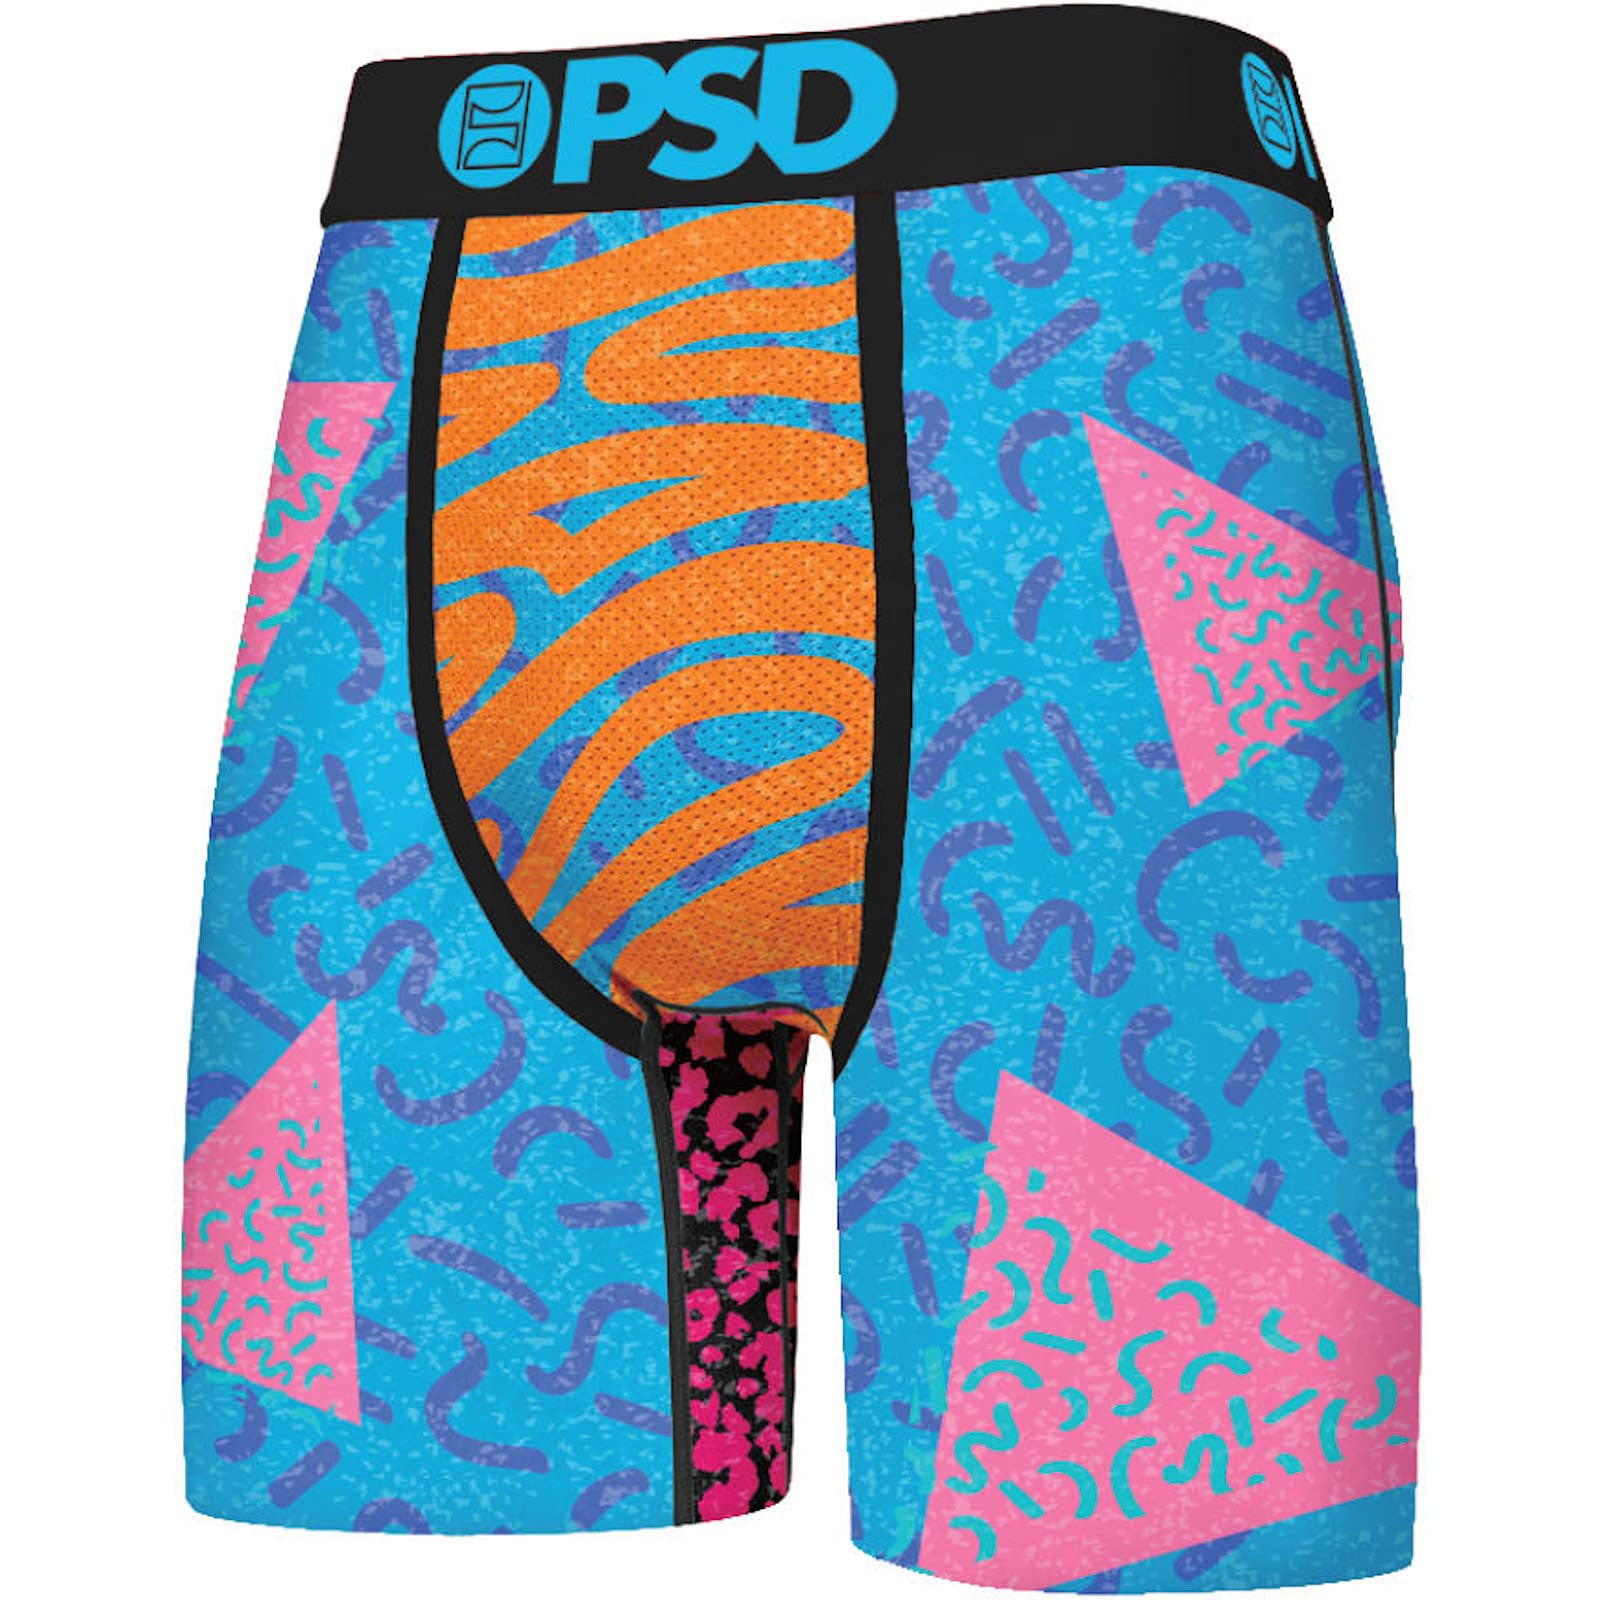 PSD underwear  Men and underwear